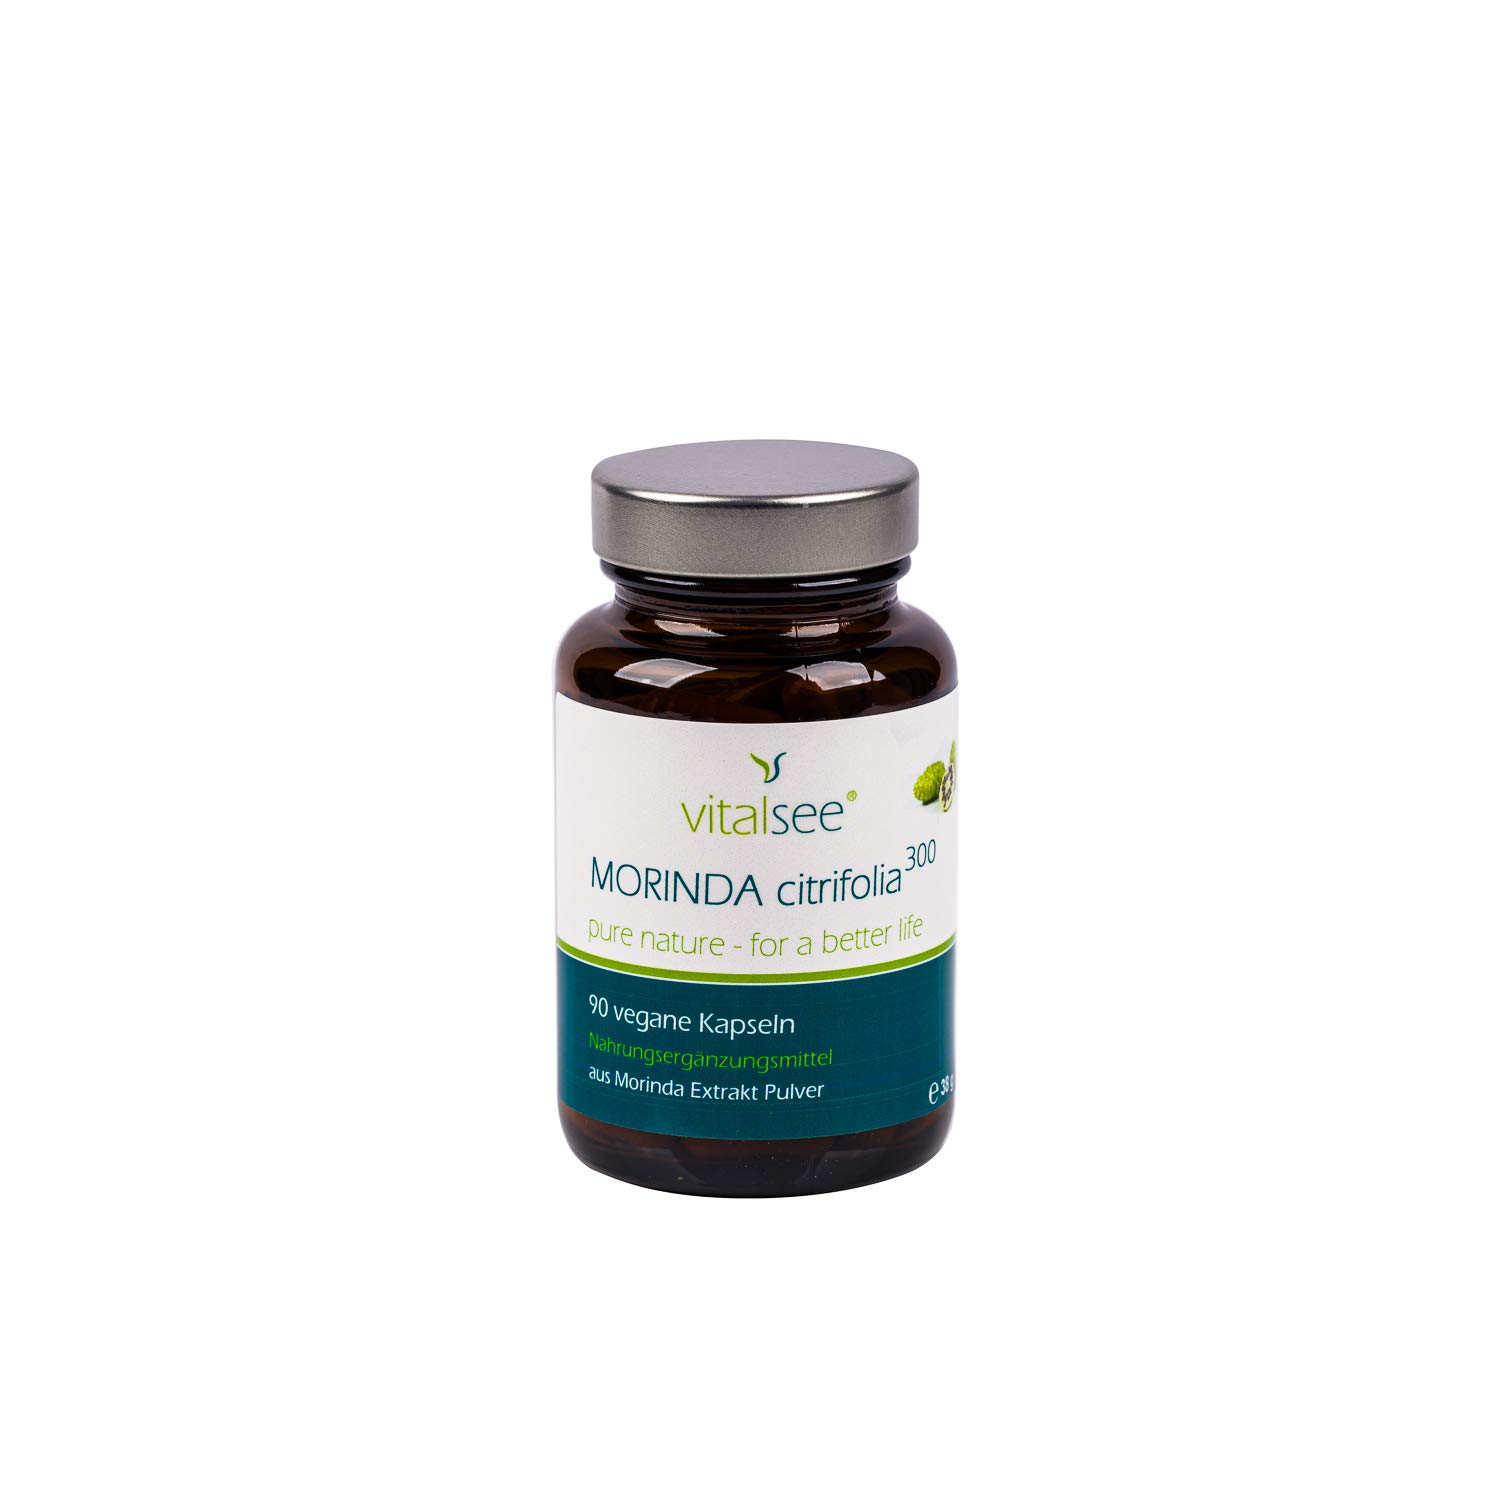 Vitalsee Morinda citrifolia 300 Extrakt | 90 Kapseln | Antioxidantien & Immunsystem-Unterstützung | Gluten-, Laktose-, & Glukosefrei | Vegan